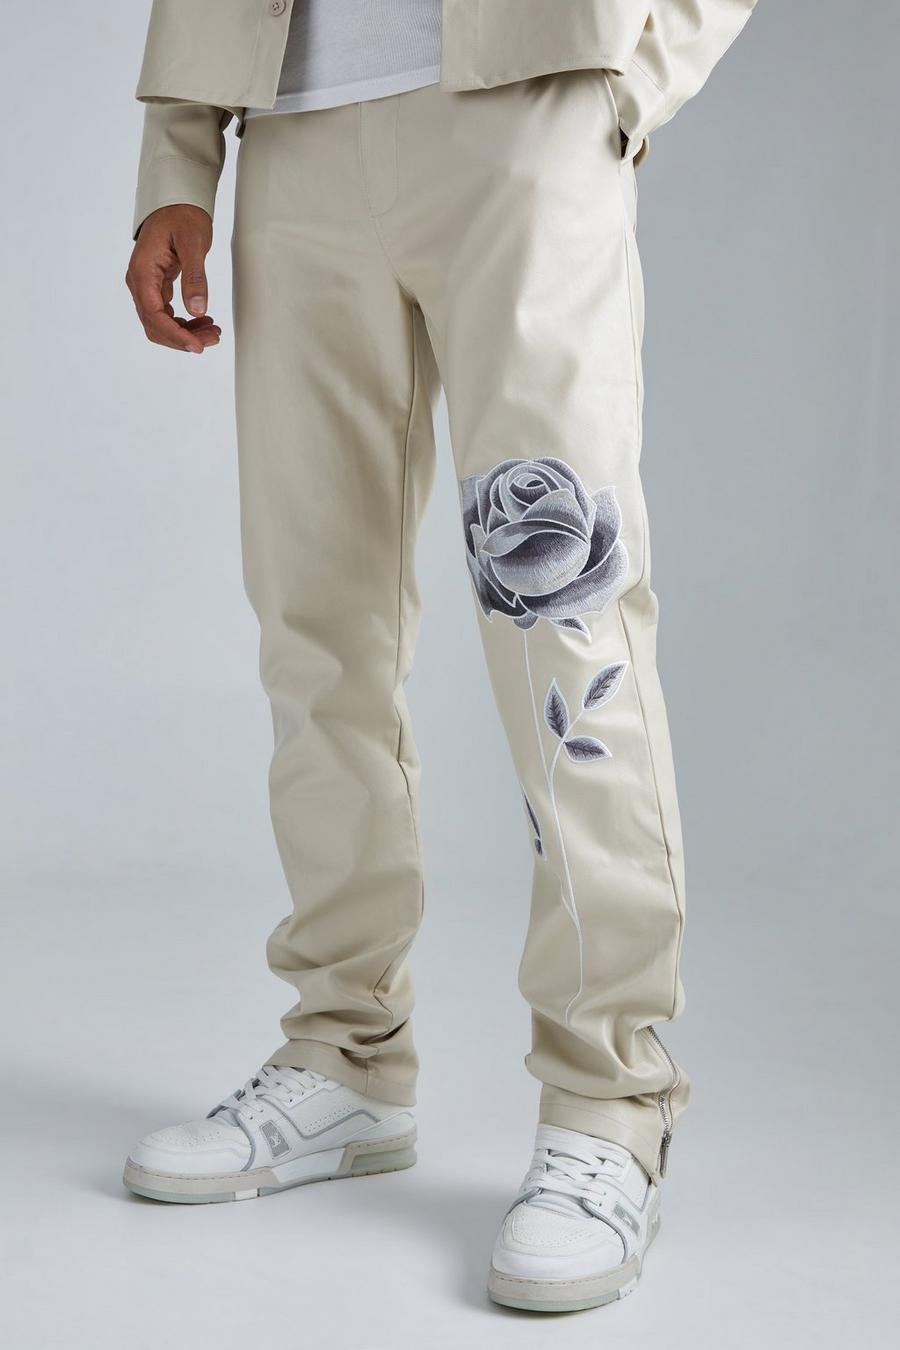 Pantaloni dritti in PU con ricami, inserti e zip, Stone